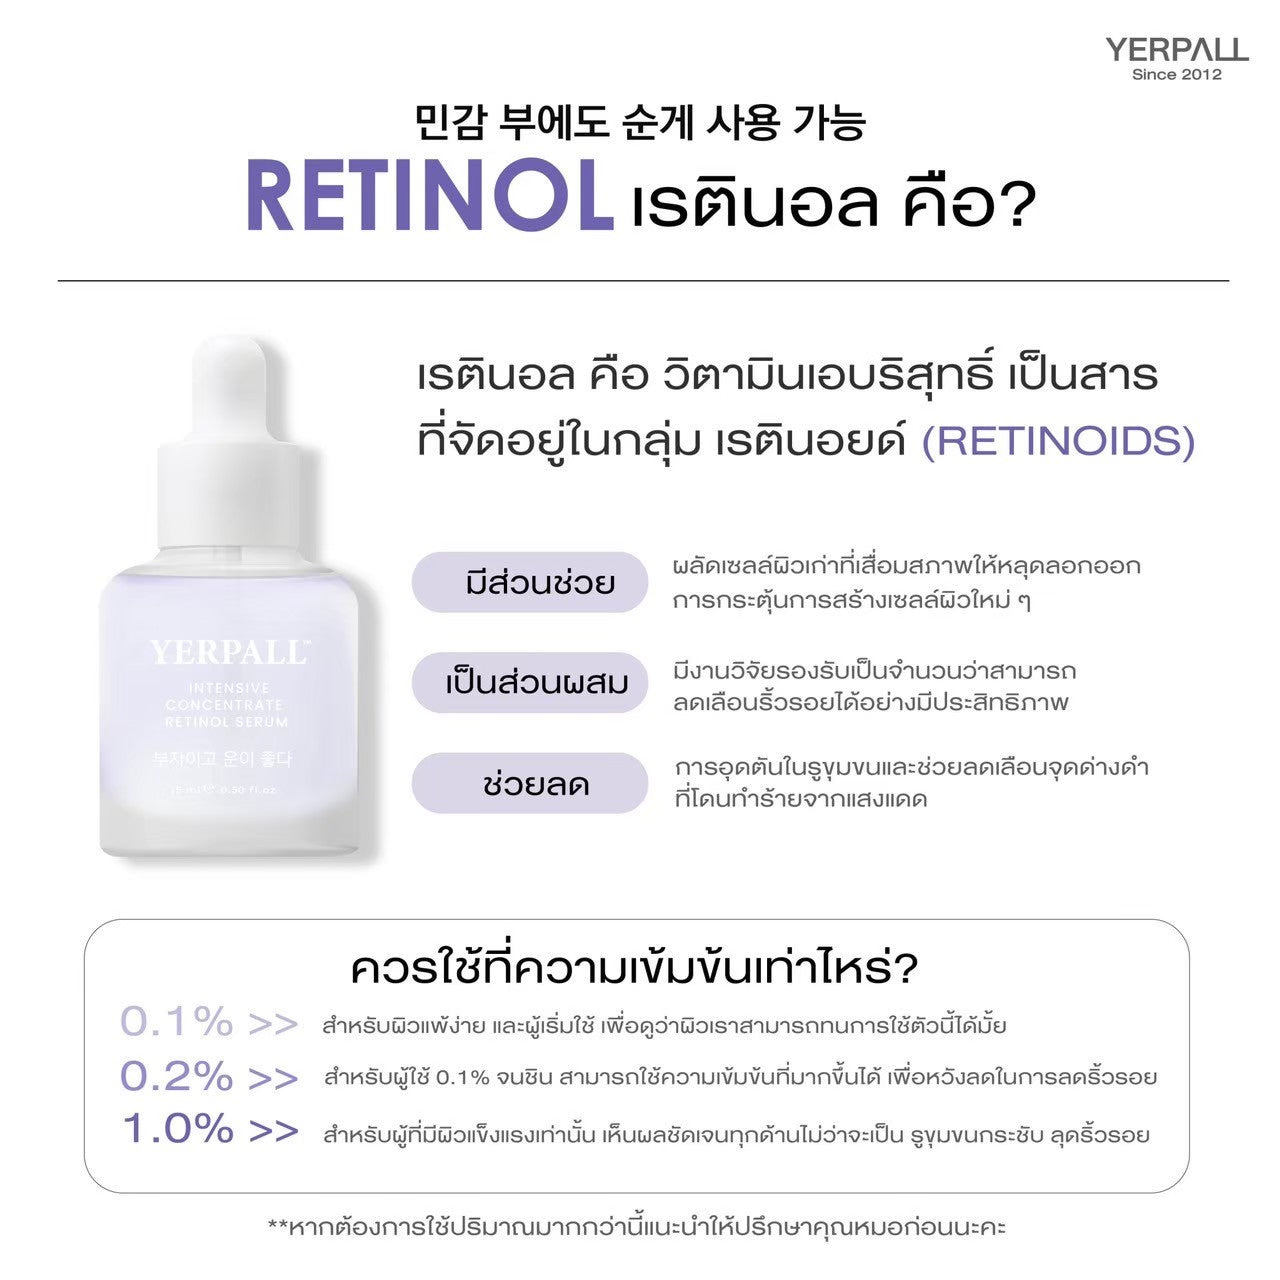 Yerpall Intensive Concentrate Retinol Serum 15 ml